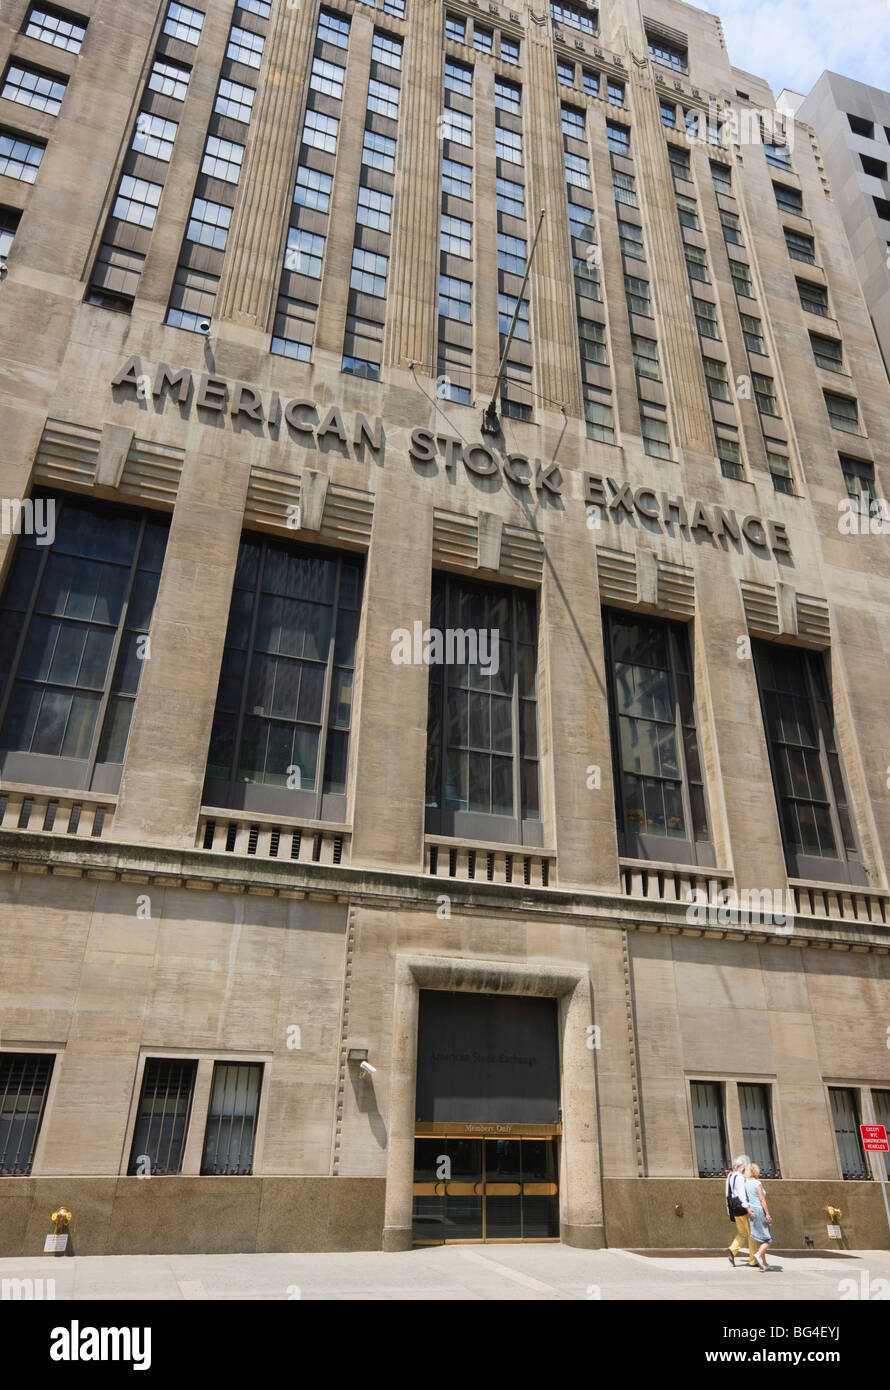 Die American Stock Exchange, Manhattan, New York City, New York, Vereinigte Staaten von Amerika, Nordamerika Stockfoto